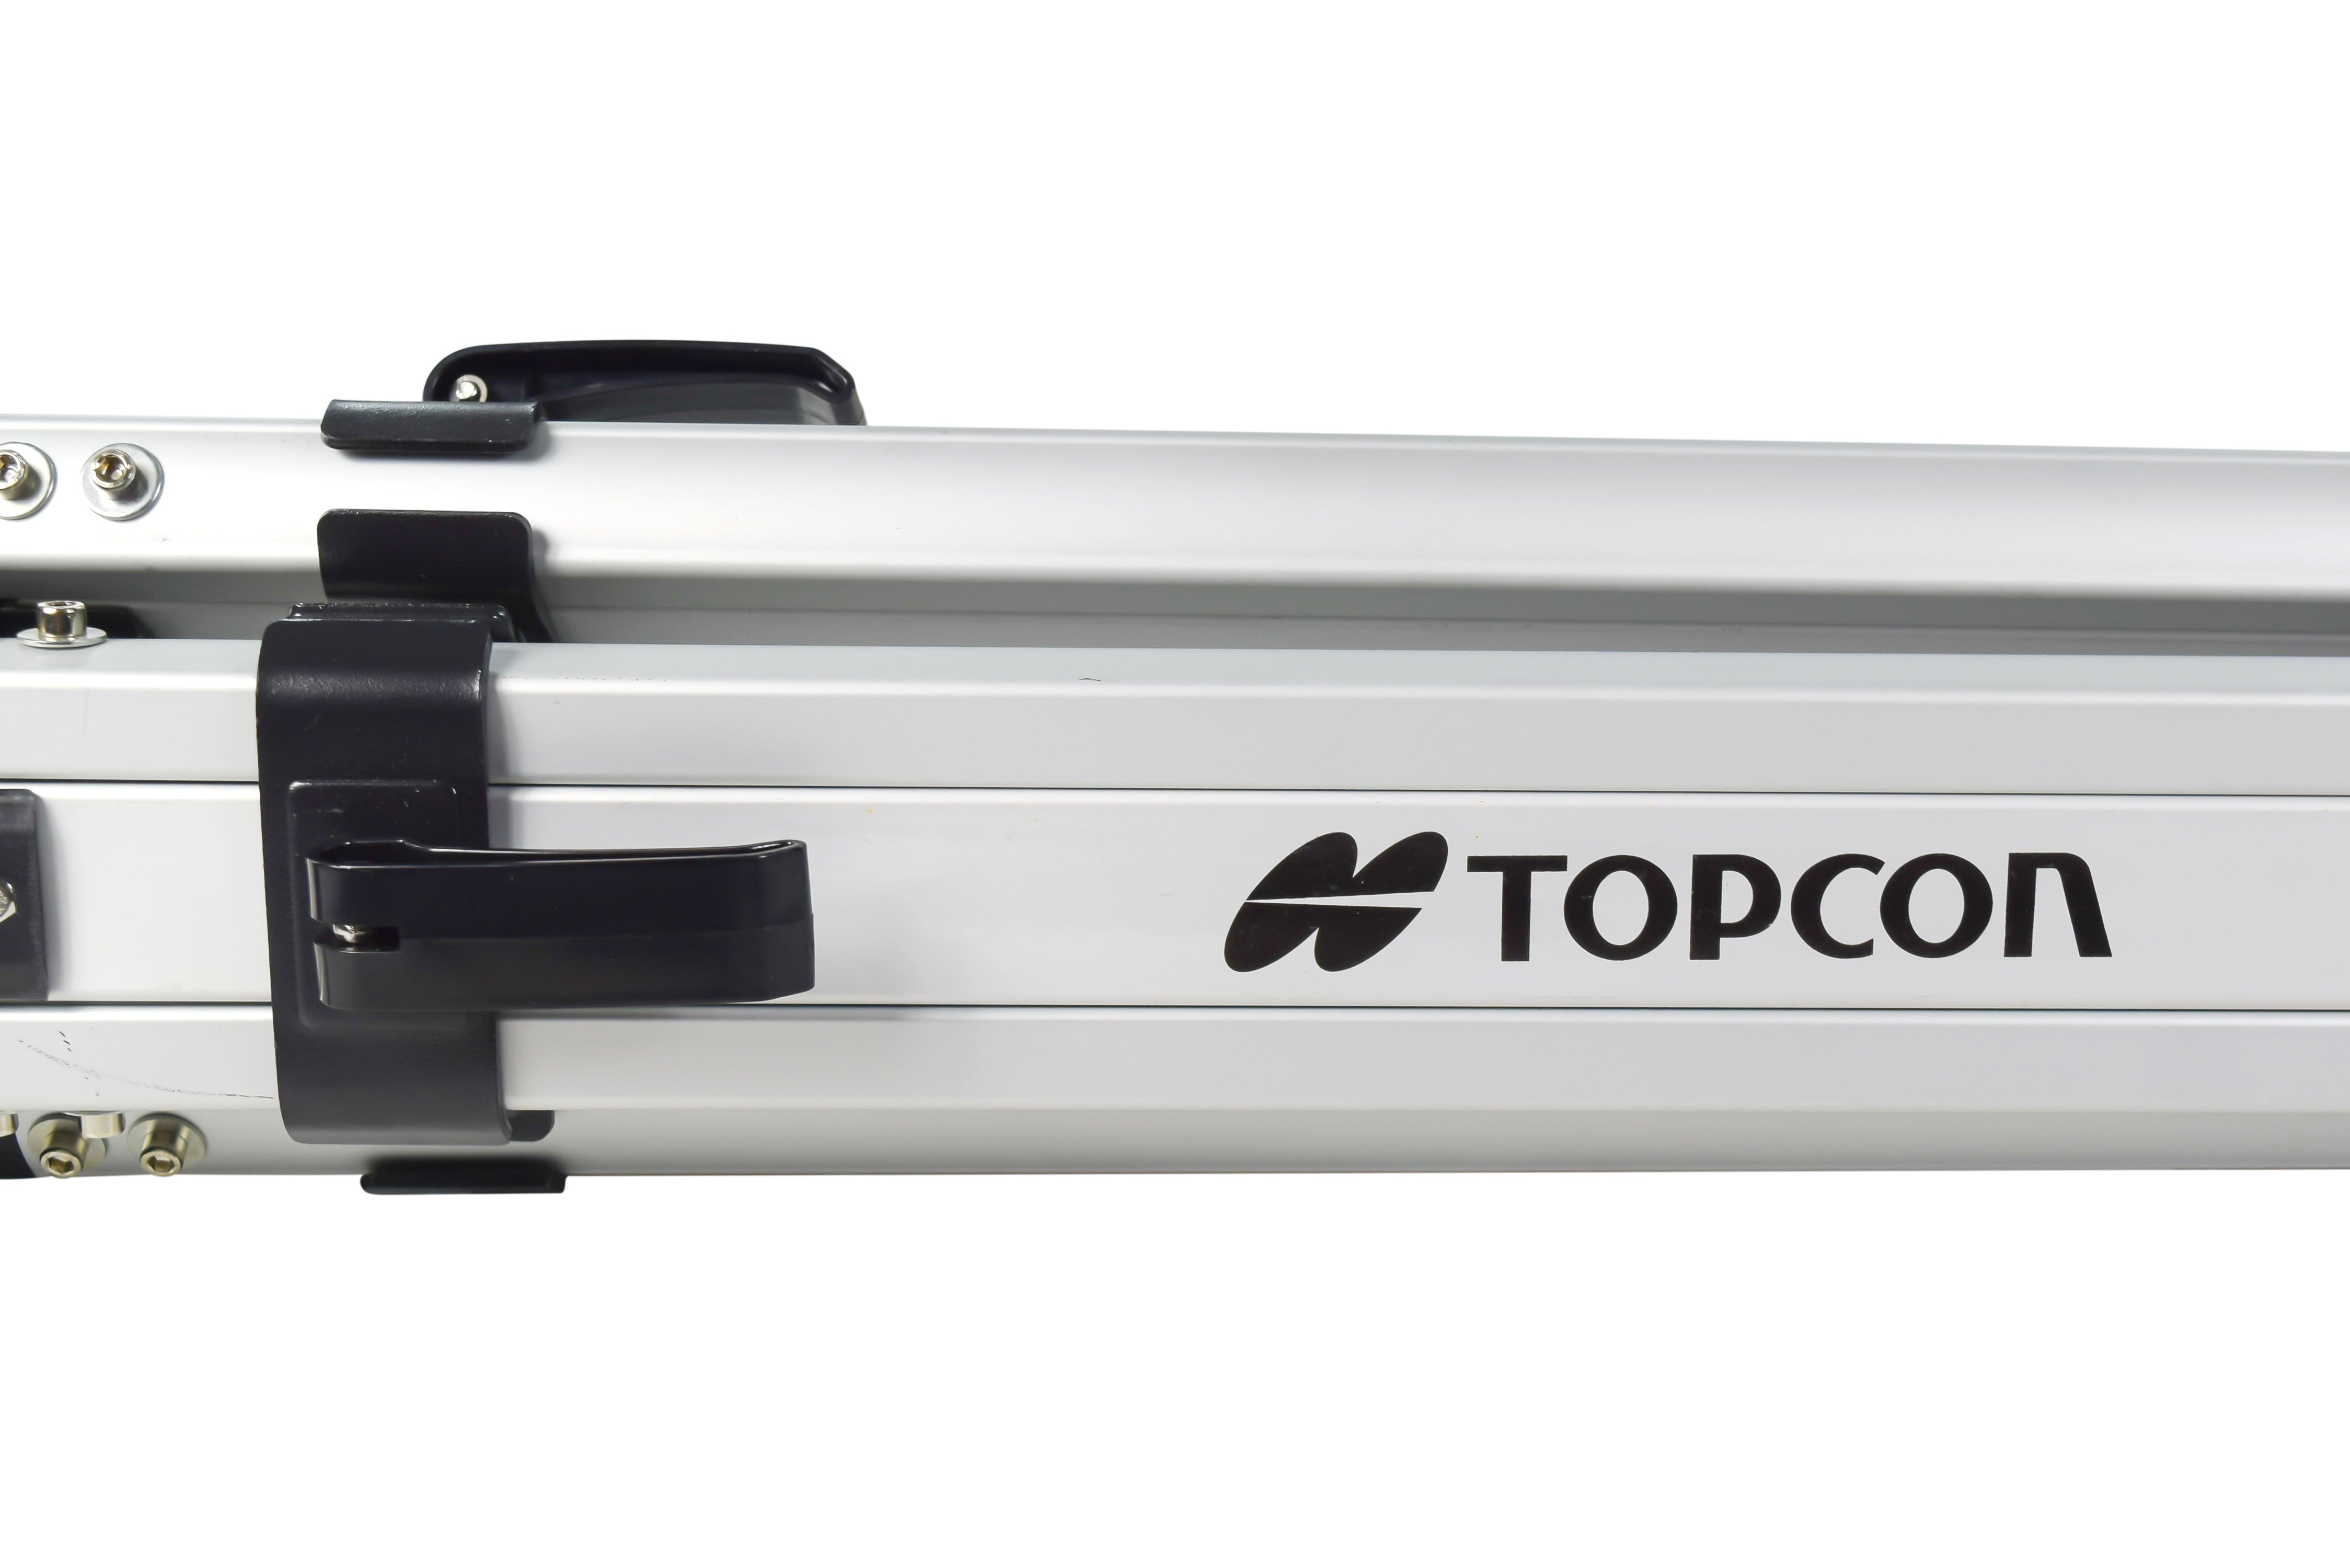 Topcon/SOKKIA 1030652-01 63-inch Maximum Aluminum Tripod with quick clamp